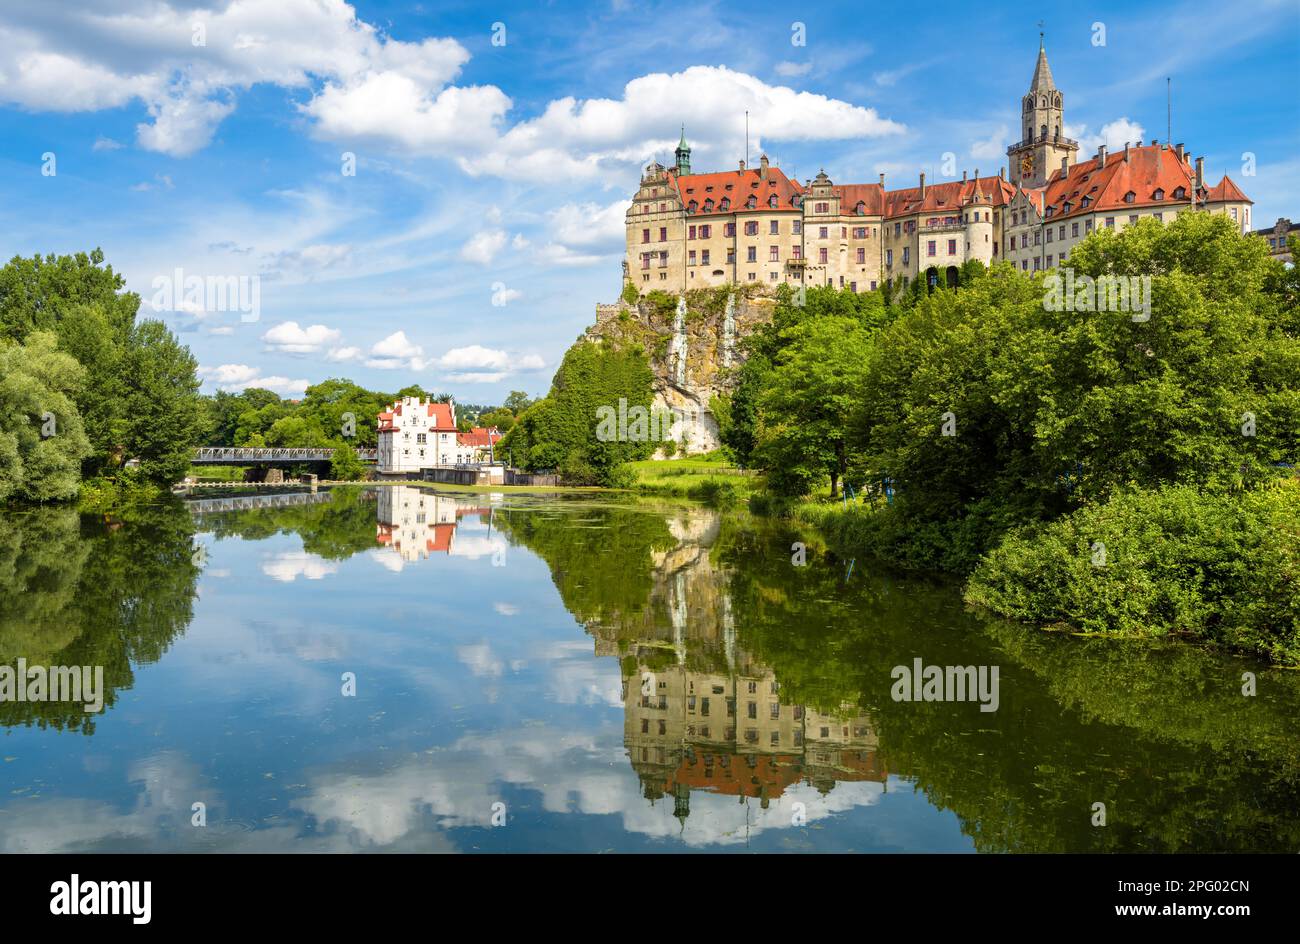 Sigmaringen Castello sul Danubio, Baden-Wurttemberg, Germania. E' un punto di riferimento di Schwarzwald. Paesaggio con vecchia casa Hohenzollern come palazzo, cielo Foto Stock